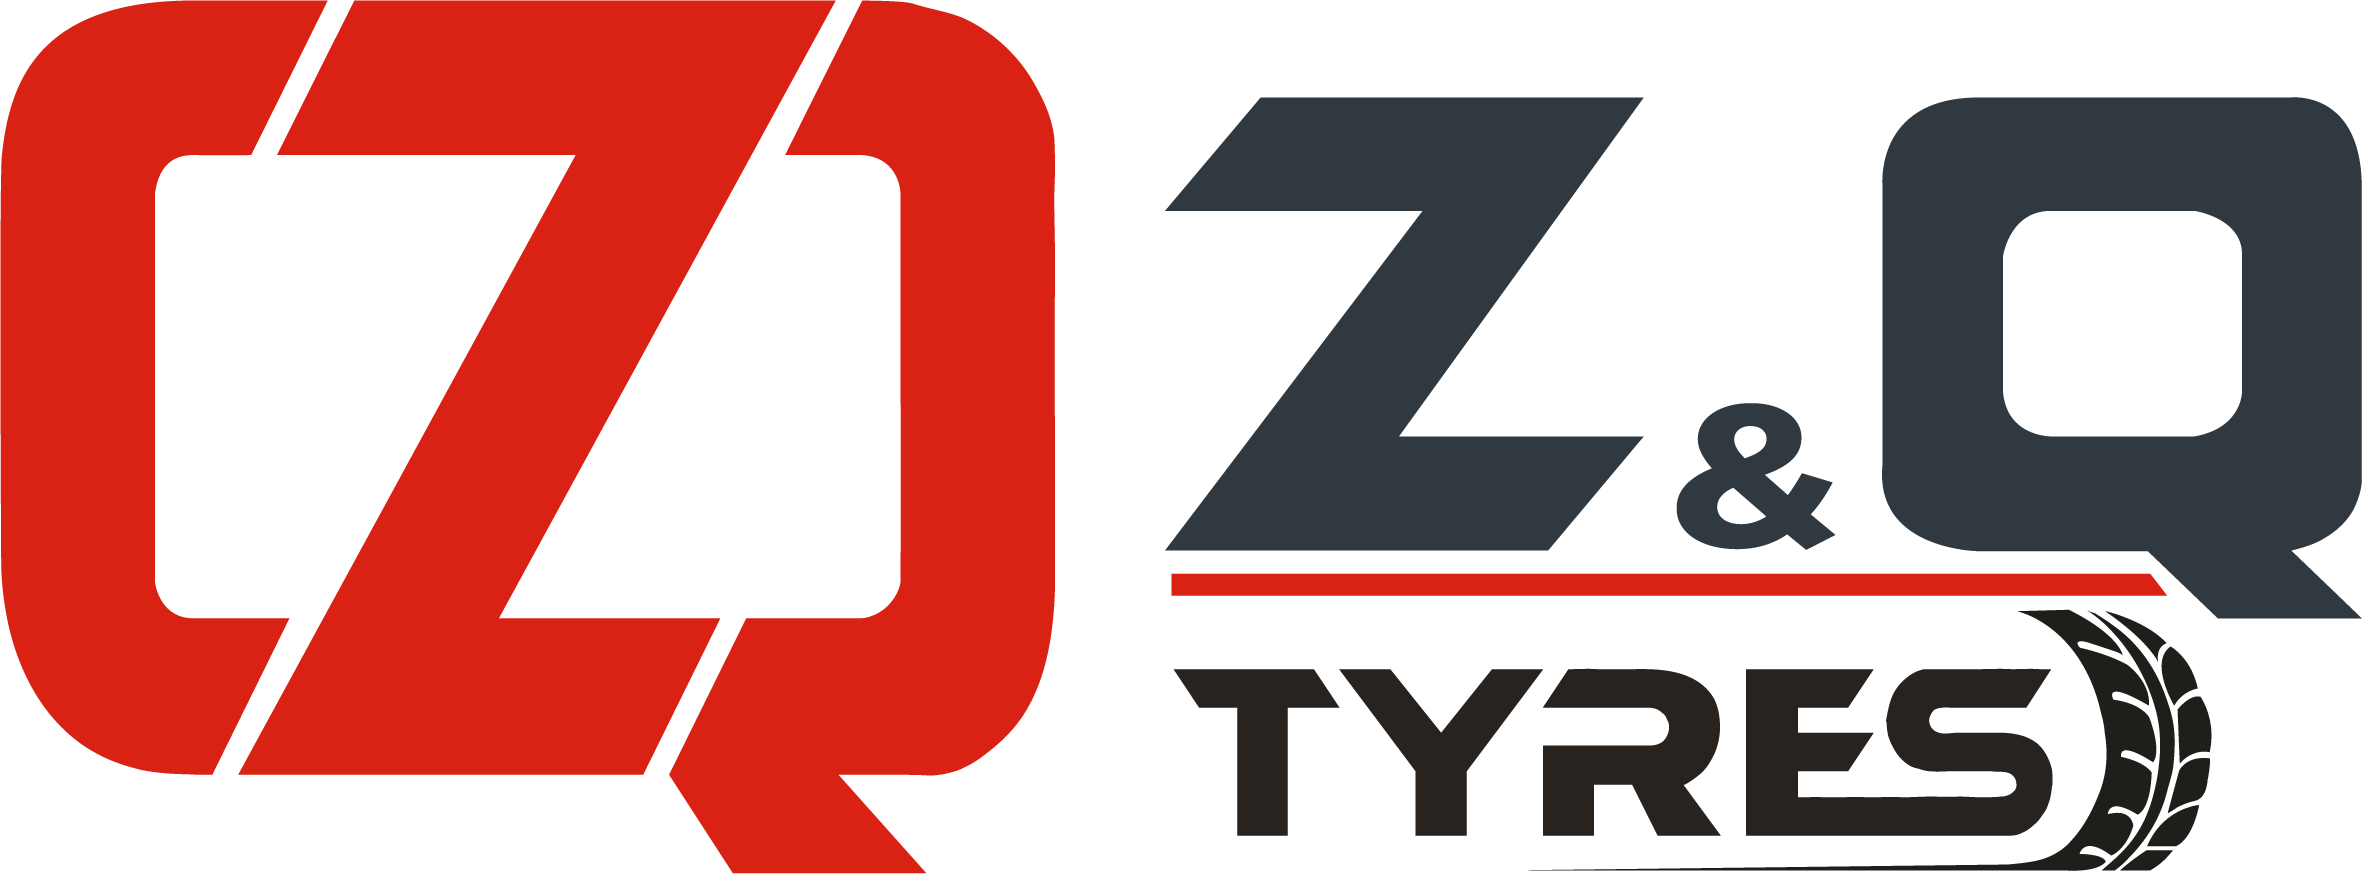 ZQ TYRES - Zirai Lastikler, Endüstriyel Lastikler ve İş Makinesi Lastikleri | Lastik Yenileme , Sıcak ve Soğuk Lastik Kaplama ve Aksesuarlar